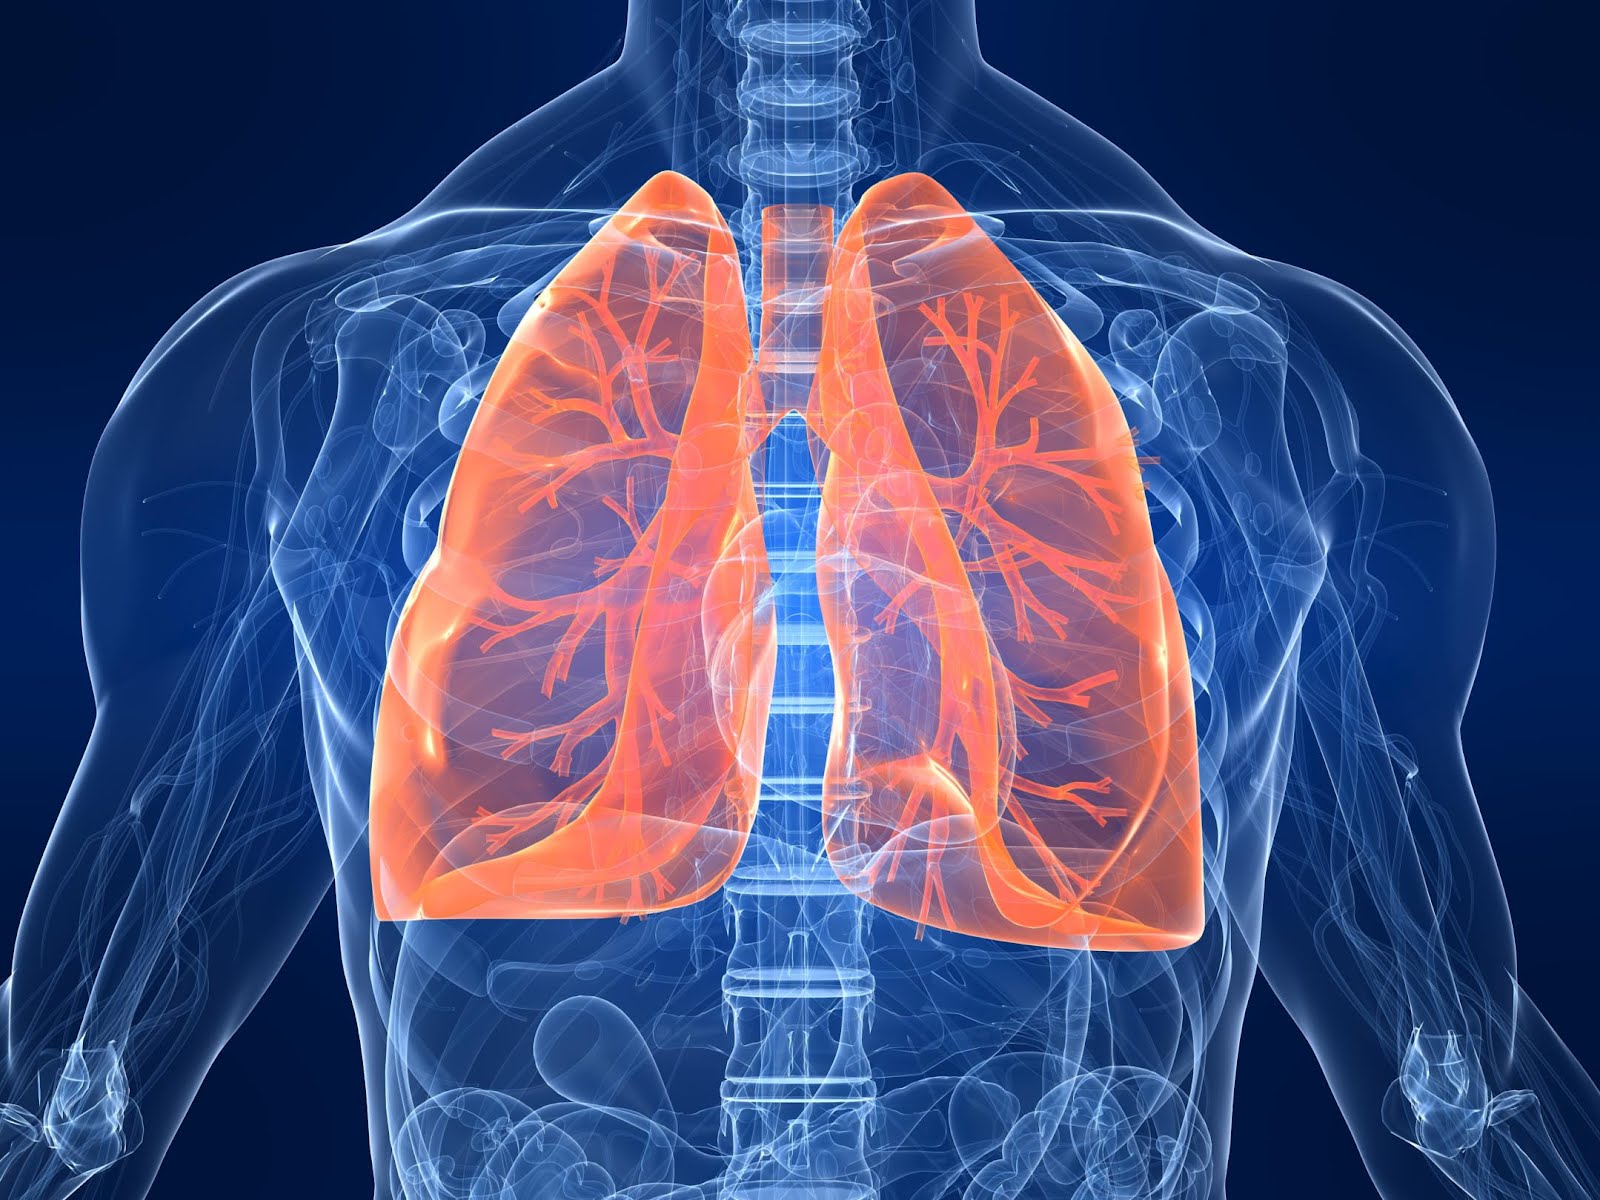 Penyakit peradangan pada selaput pembungkus paru-paru disebut